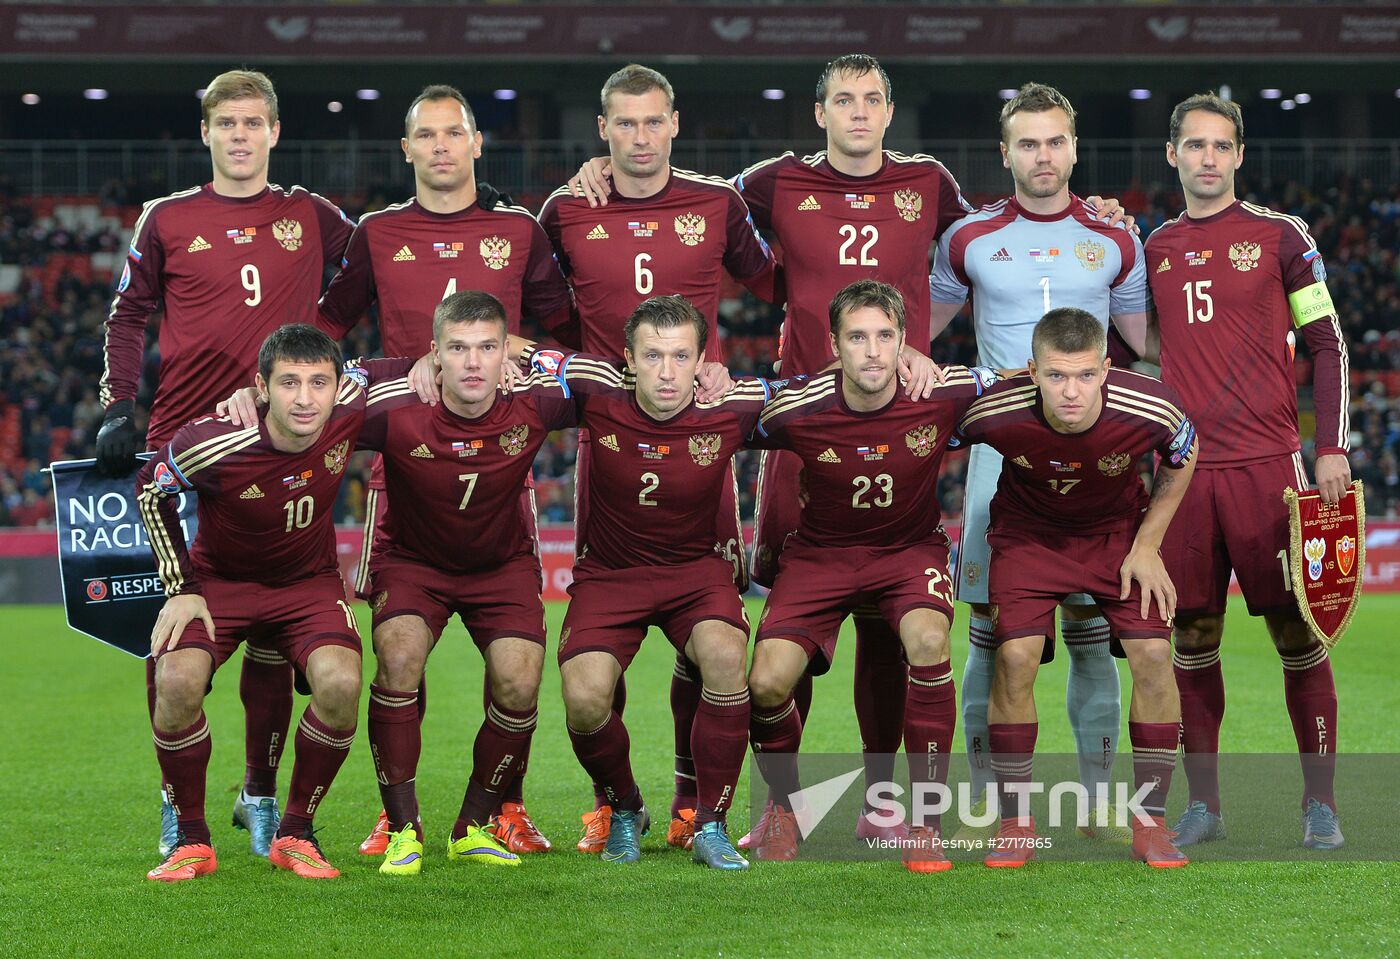 UEFA Euro 2016 qualifier, Russia vs. Montenegro